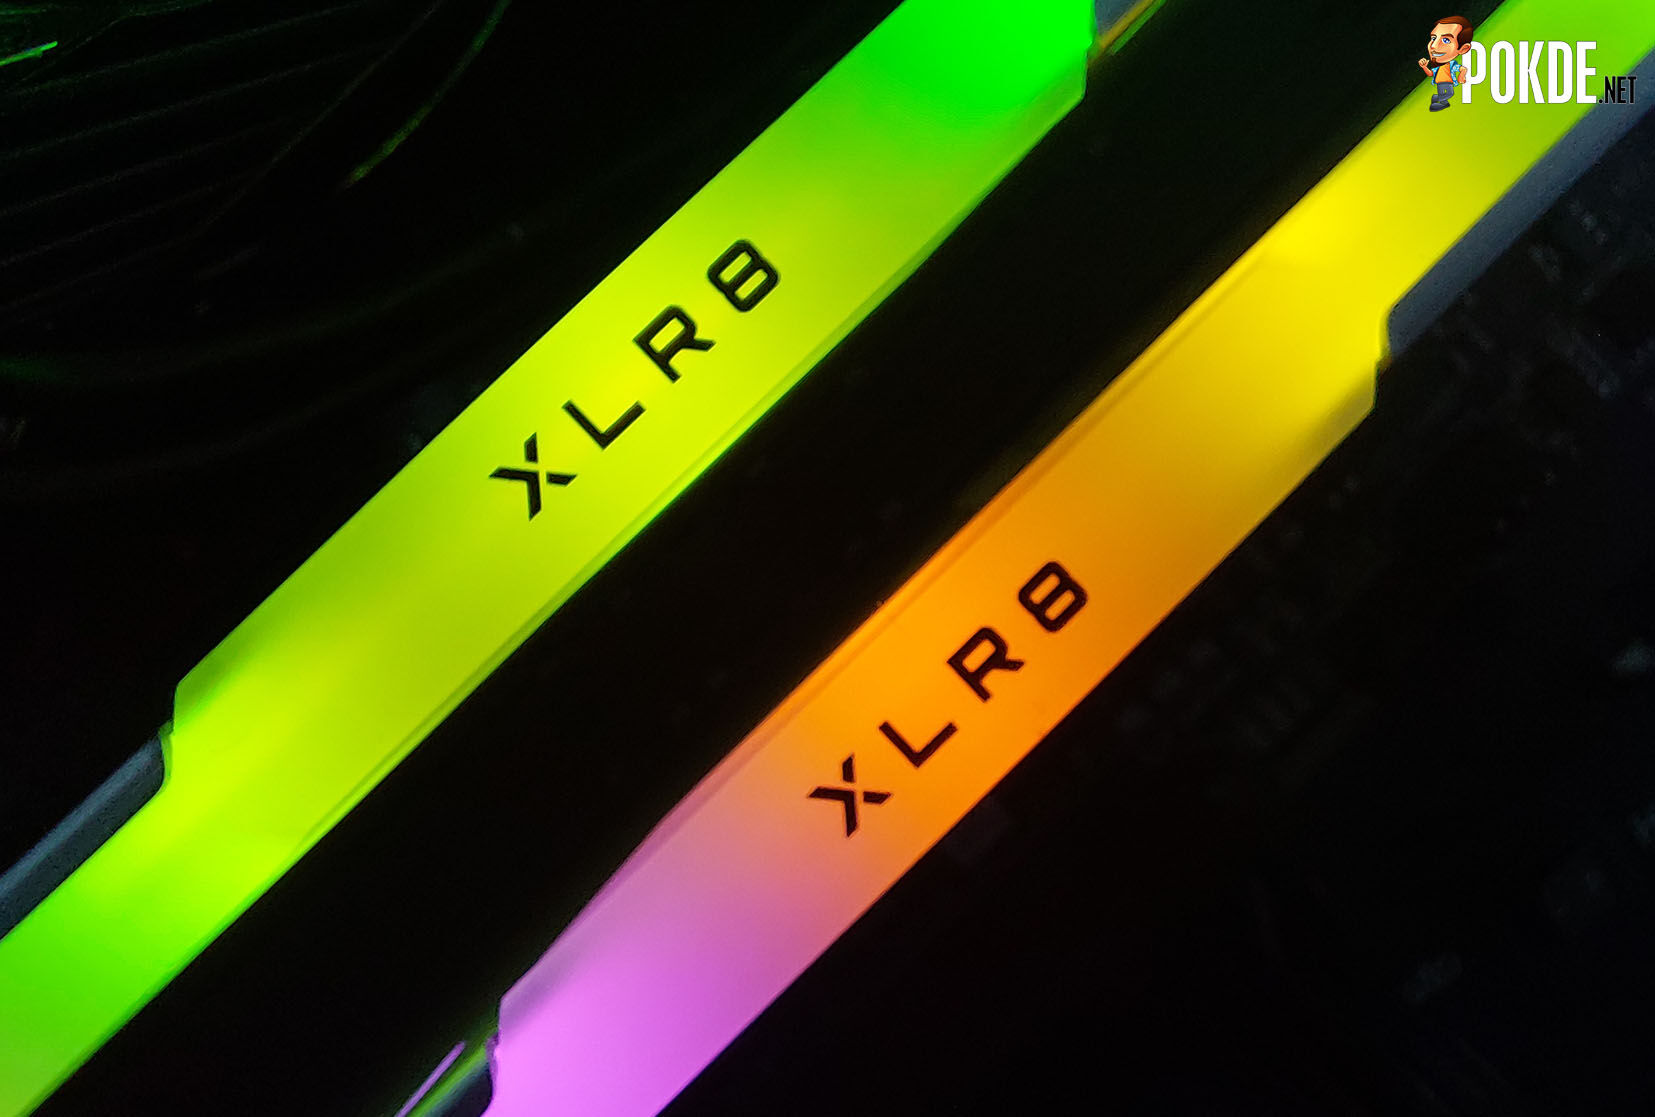 PNY XLR8 EPIC-X RGB Silver DDR4 (DDR4-3200 CL16) Review - A Cheap RGB Entry Ticket 39